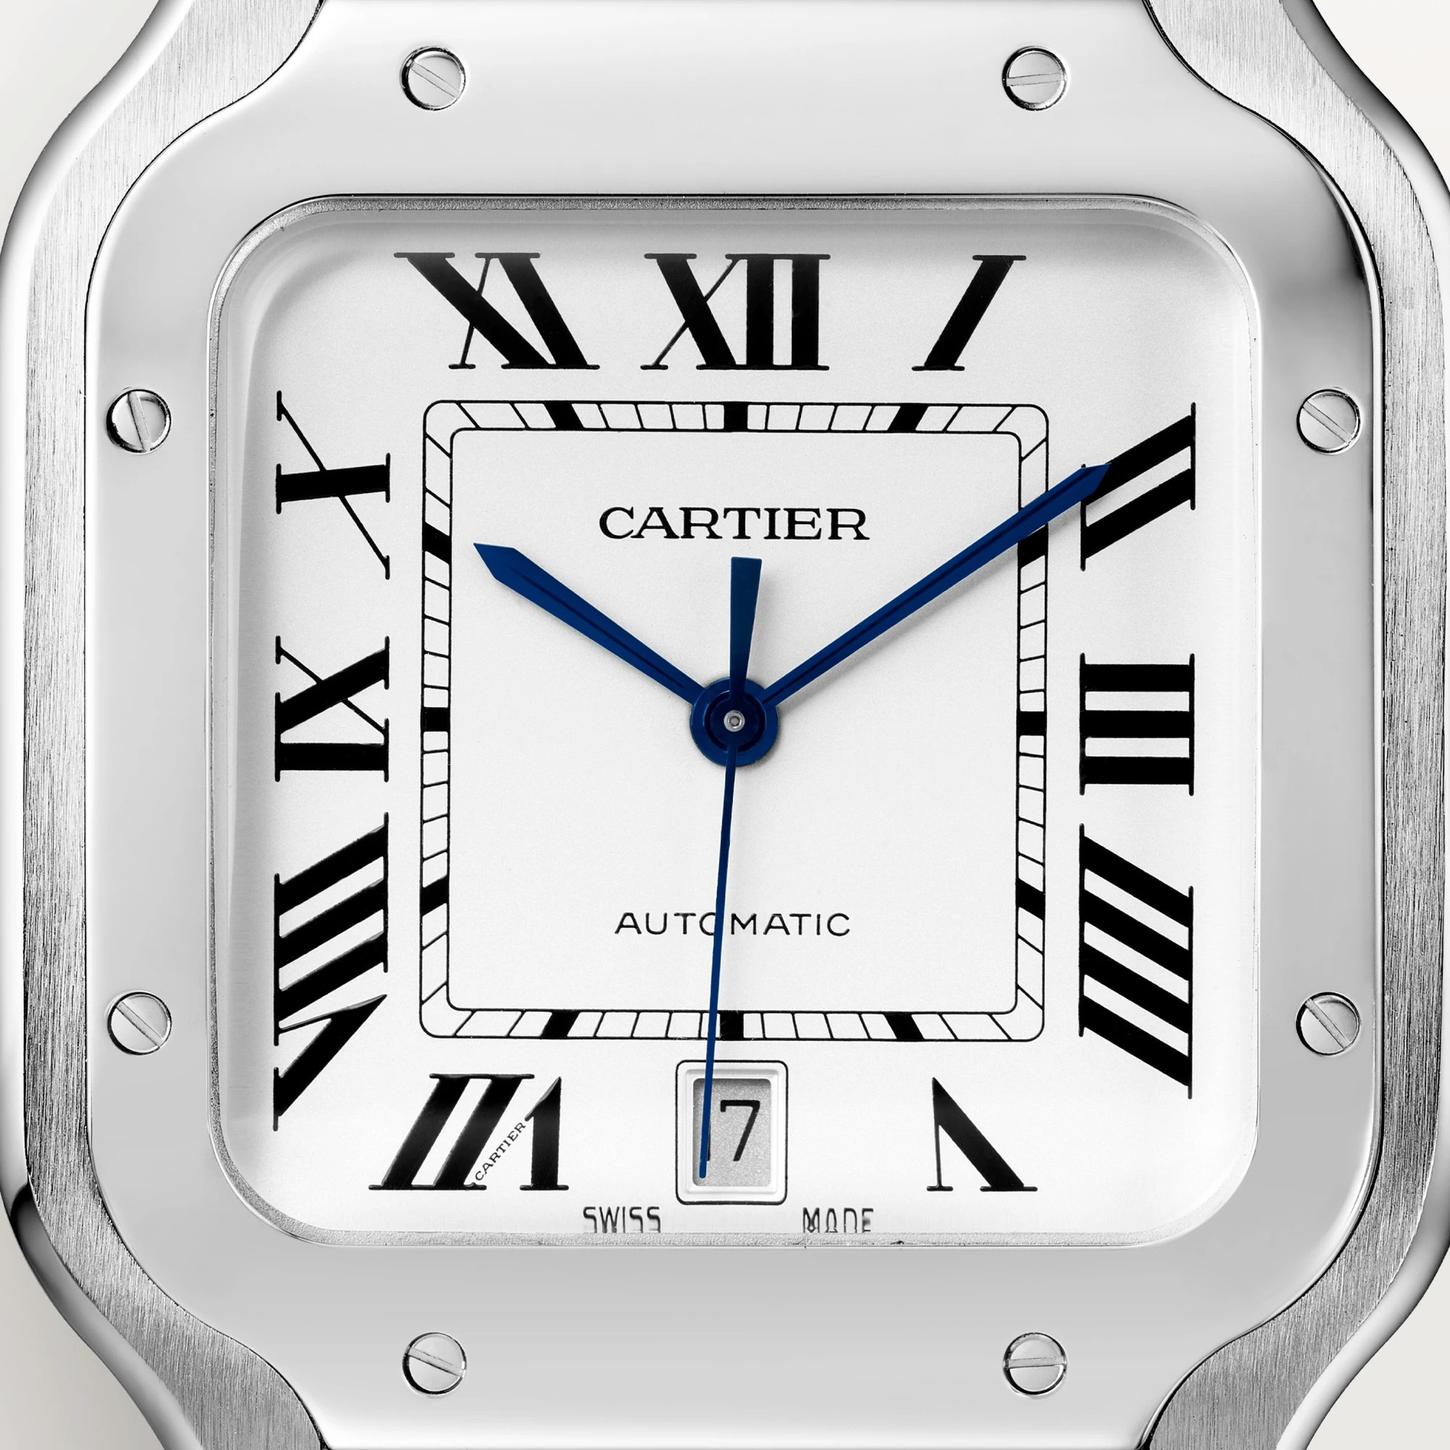 Santos de Cartier Watch, size large 2